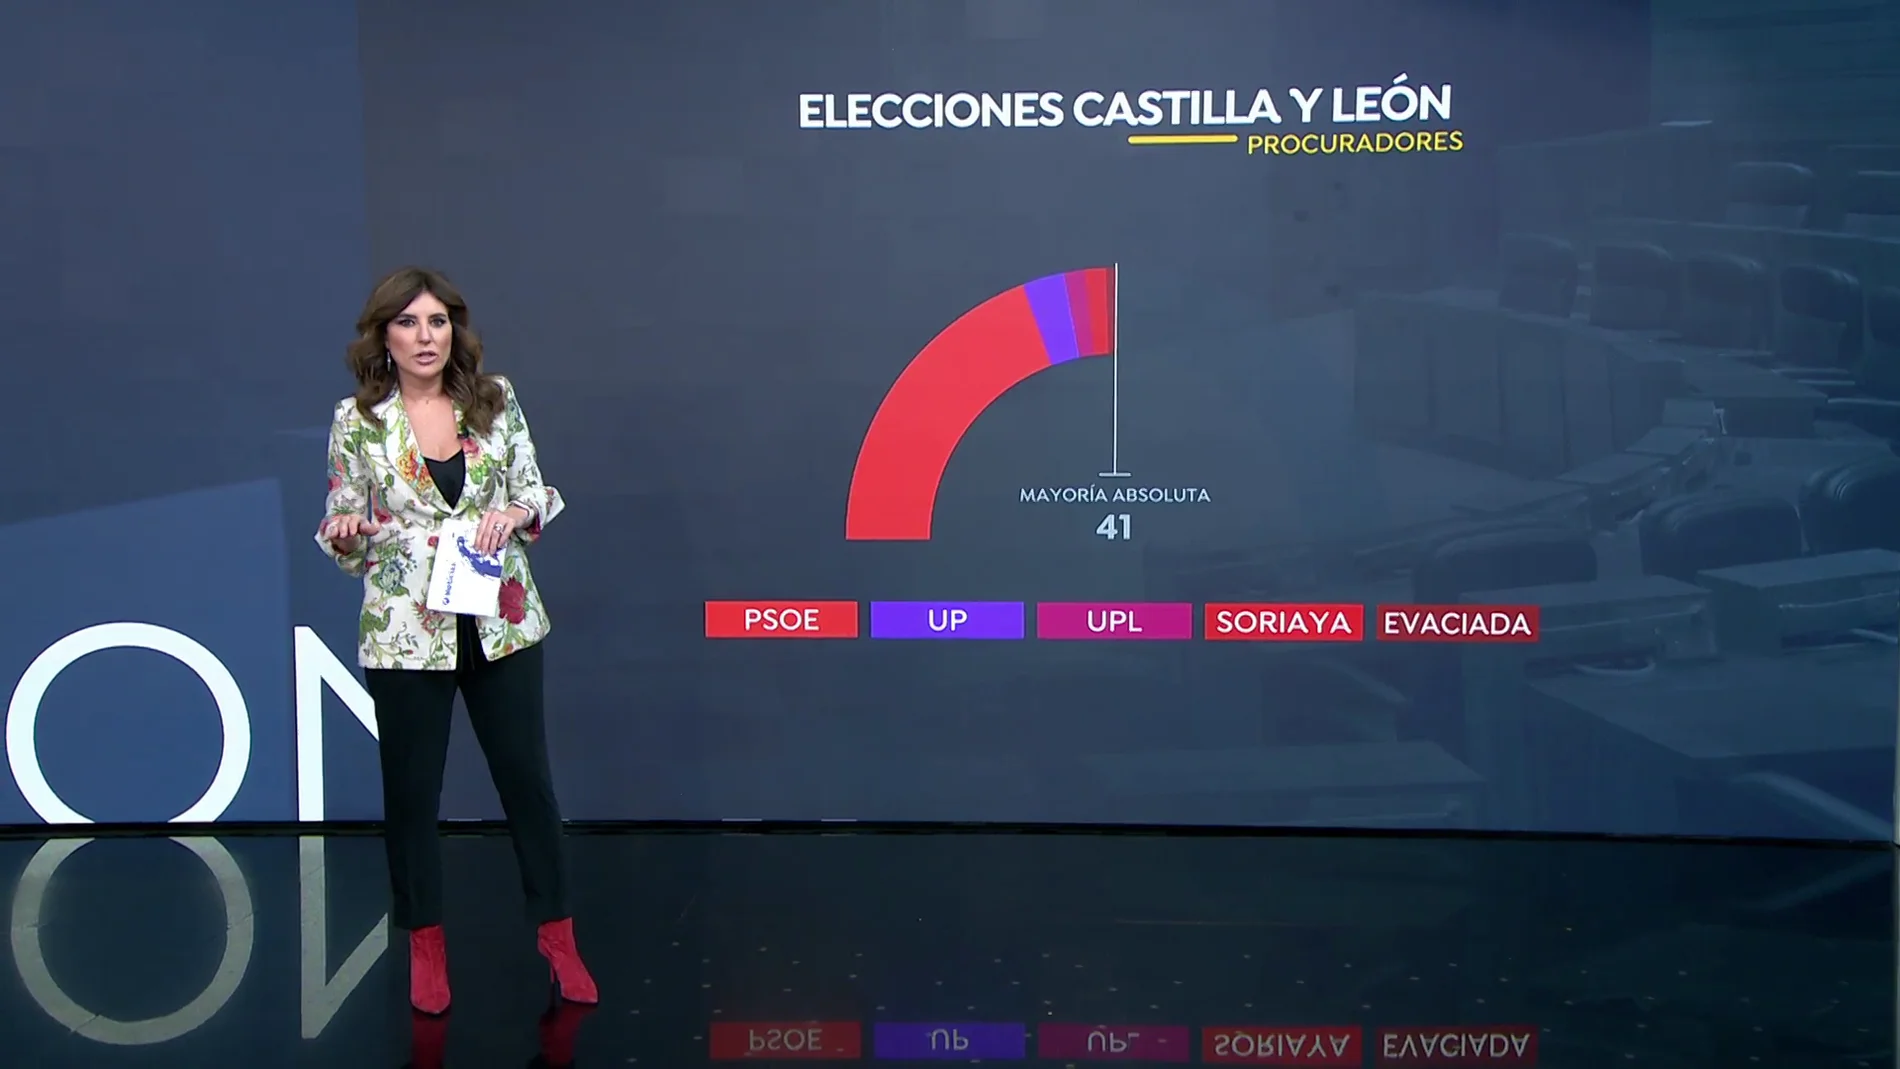 Estos son los posibles pactos de gobierno que pueden formar los partidos tras las elecciones de Castilla y León